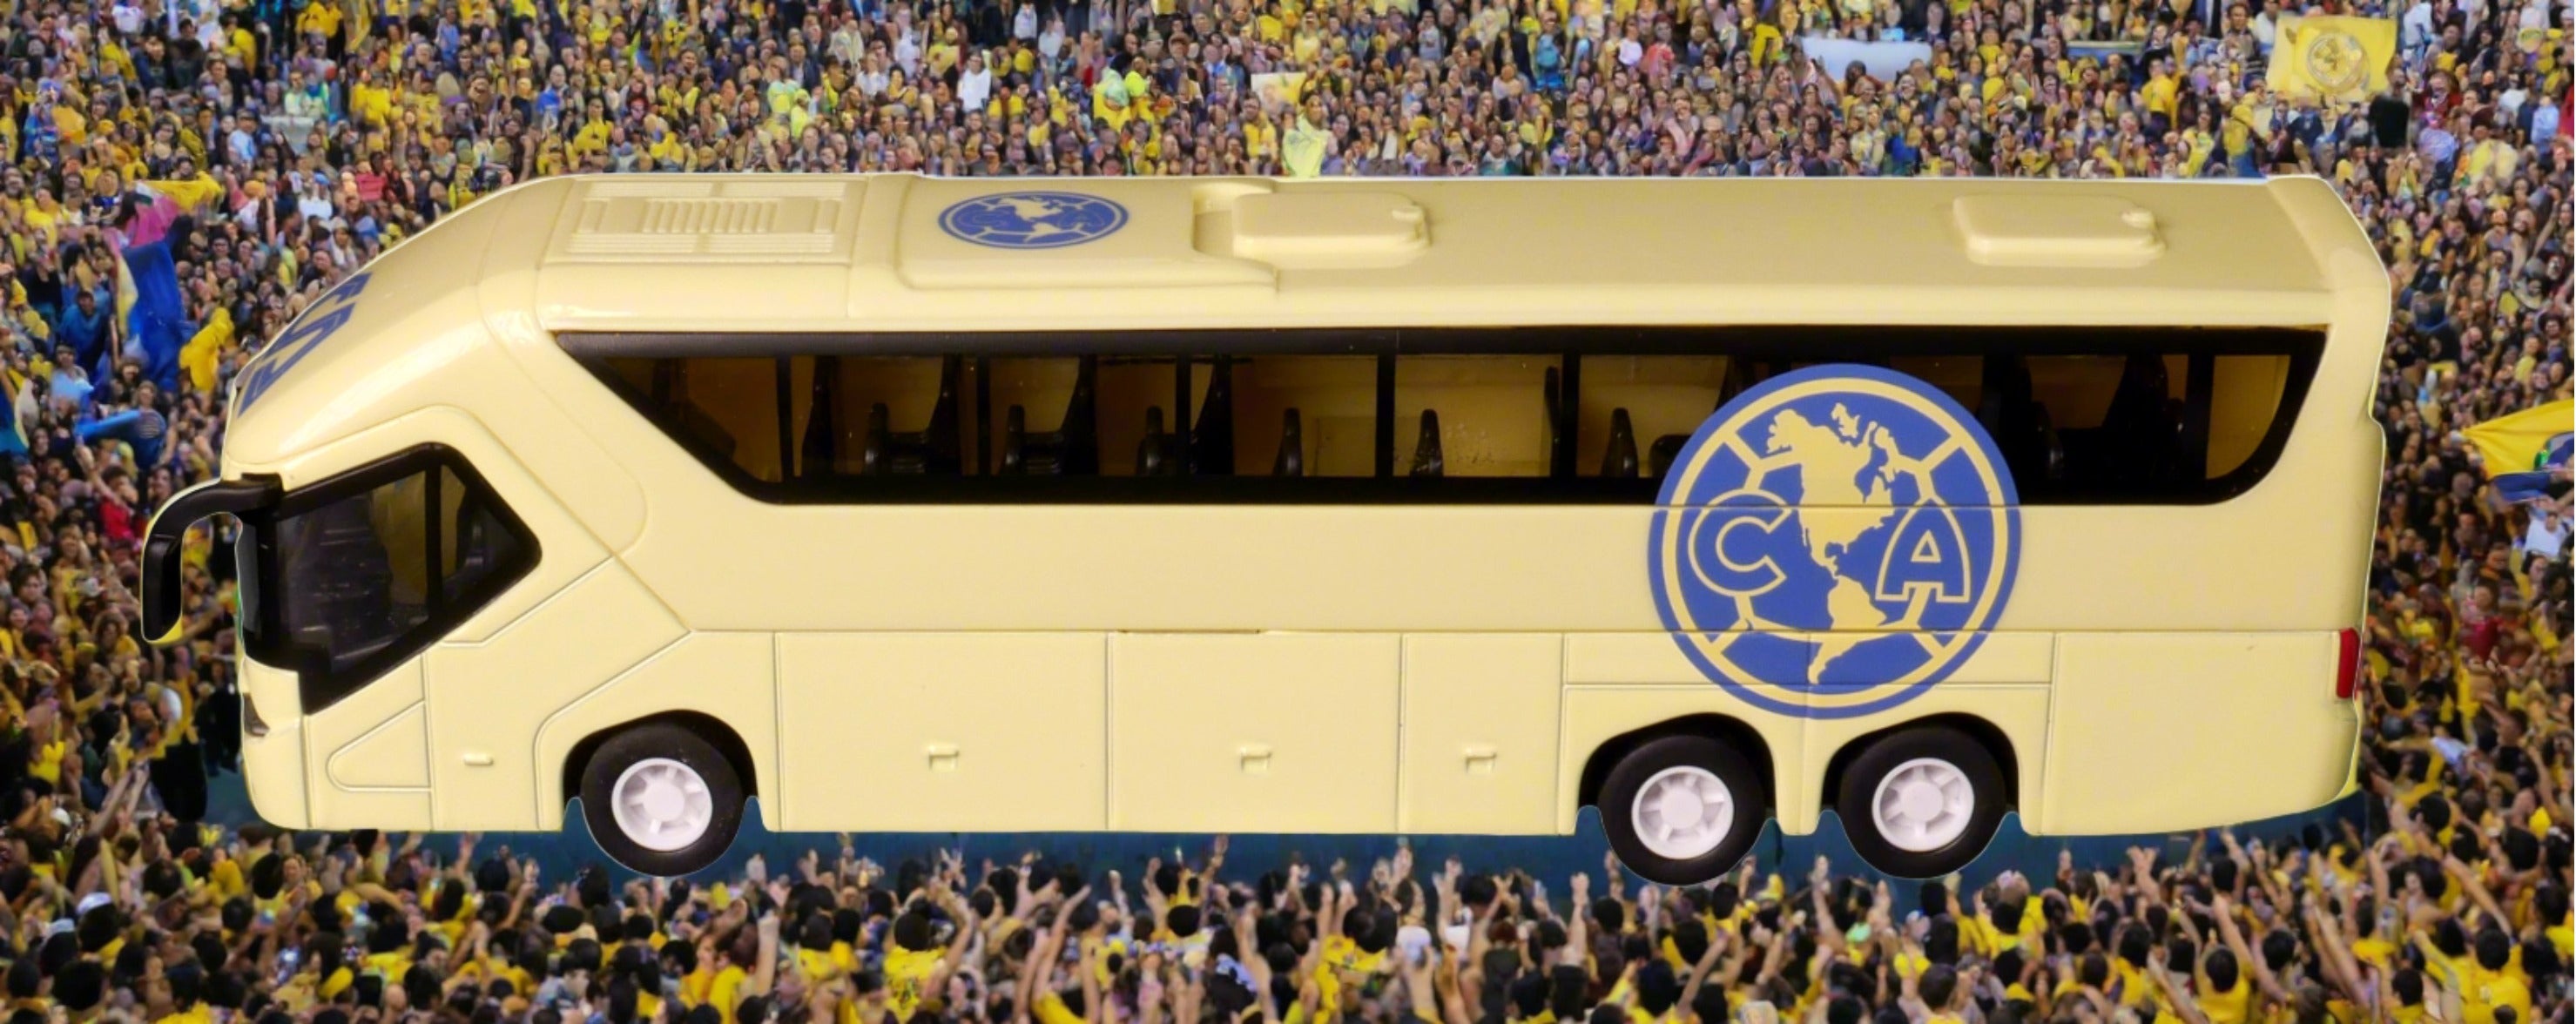 Club America team bus